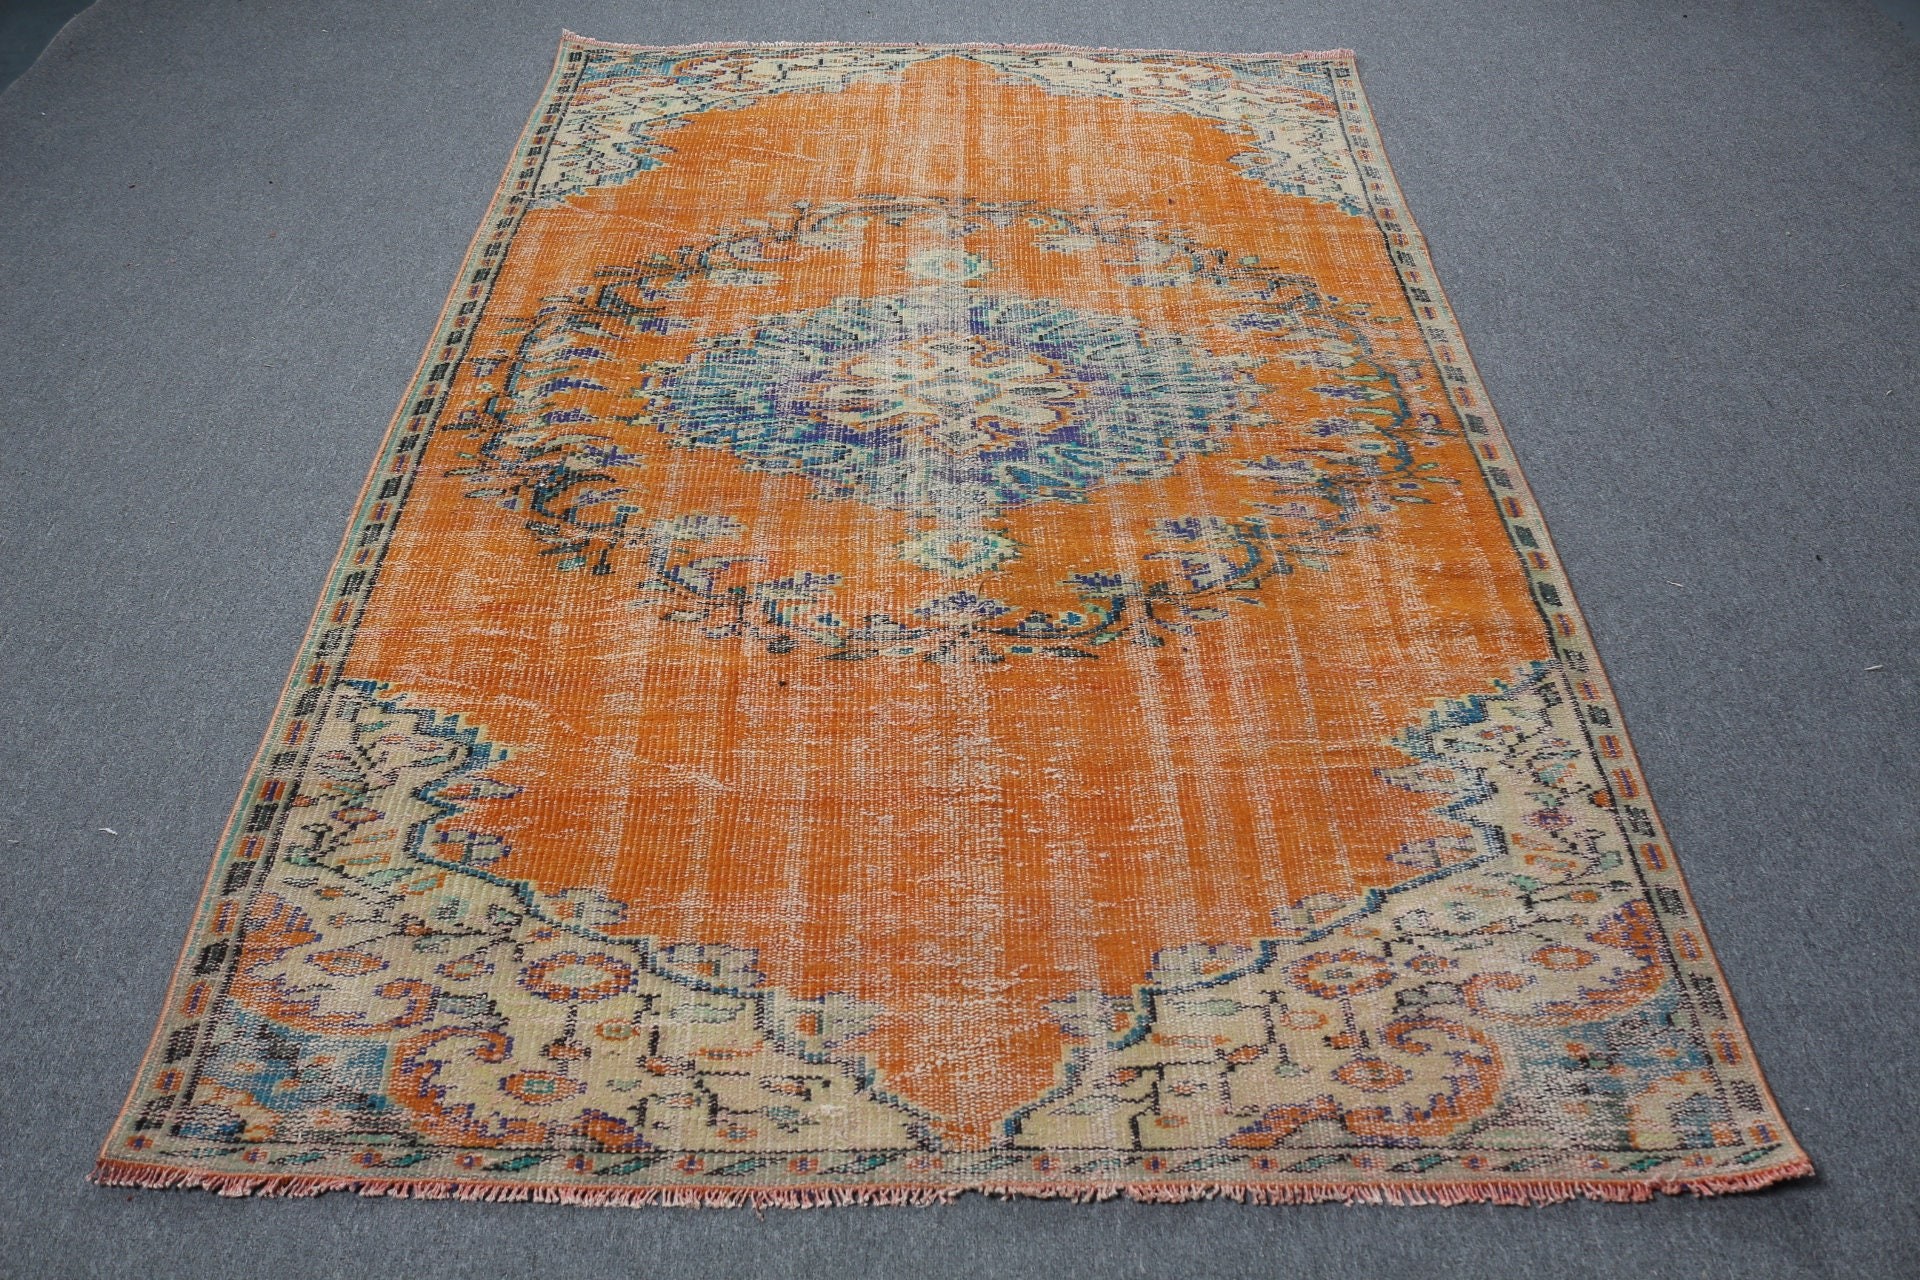 Floor Rugs, Moroccan Rugs, Bedroom Rug, Living Room Rug, Natural Rugs, Orange Oriental Rug, Turkish Rug, Vintage Rug, 5.2x8 ft Large Rugs